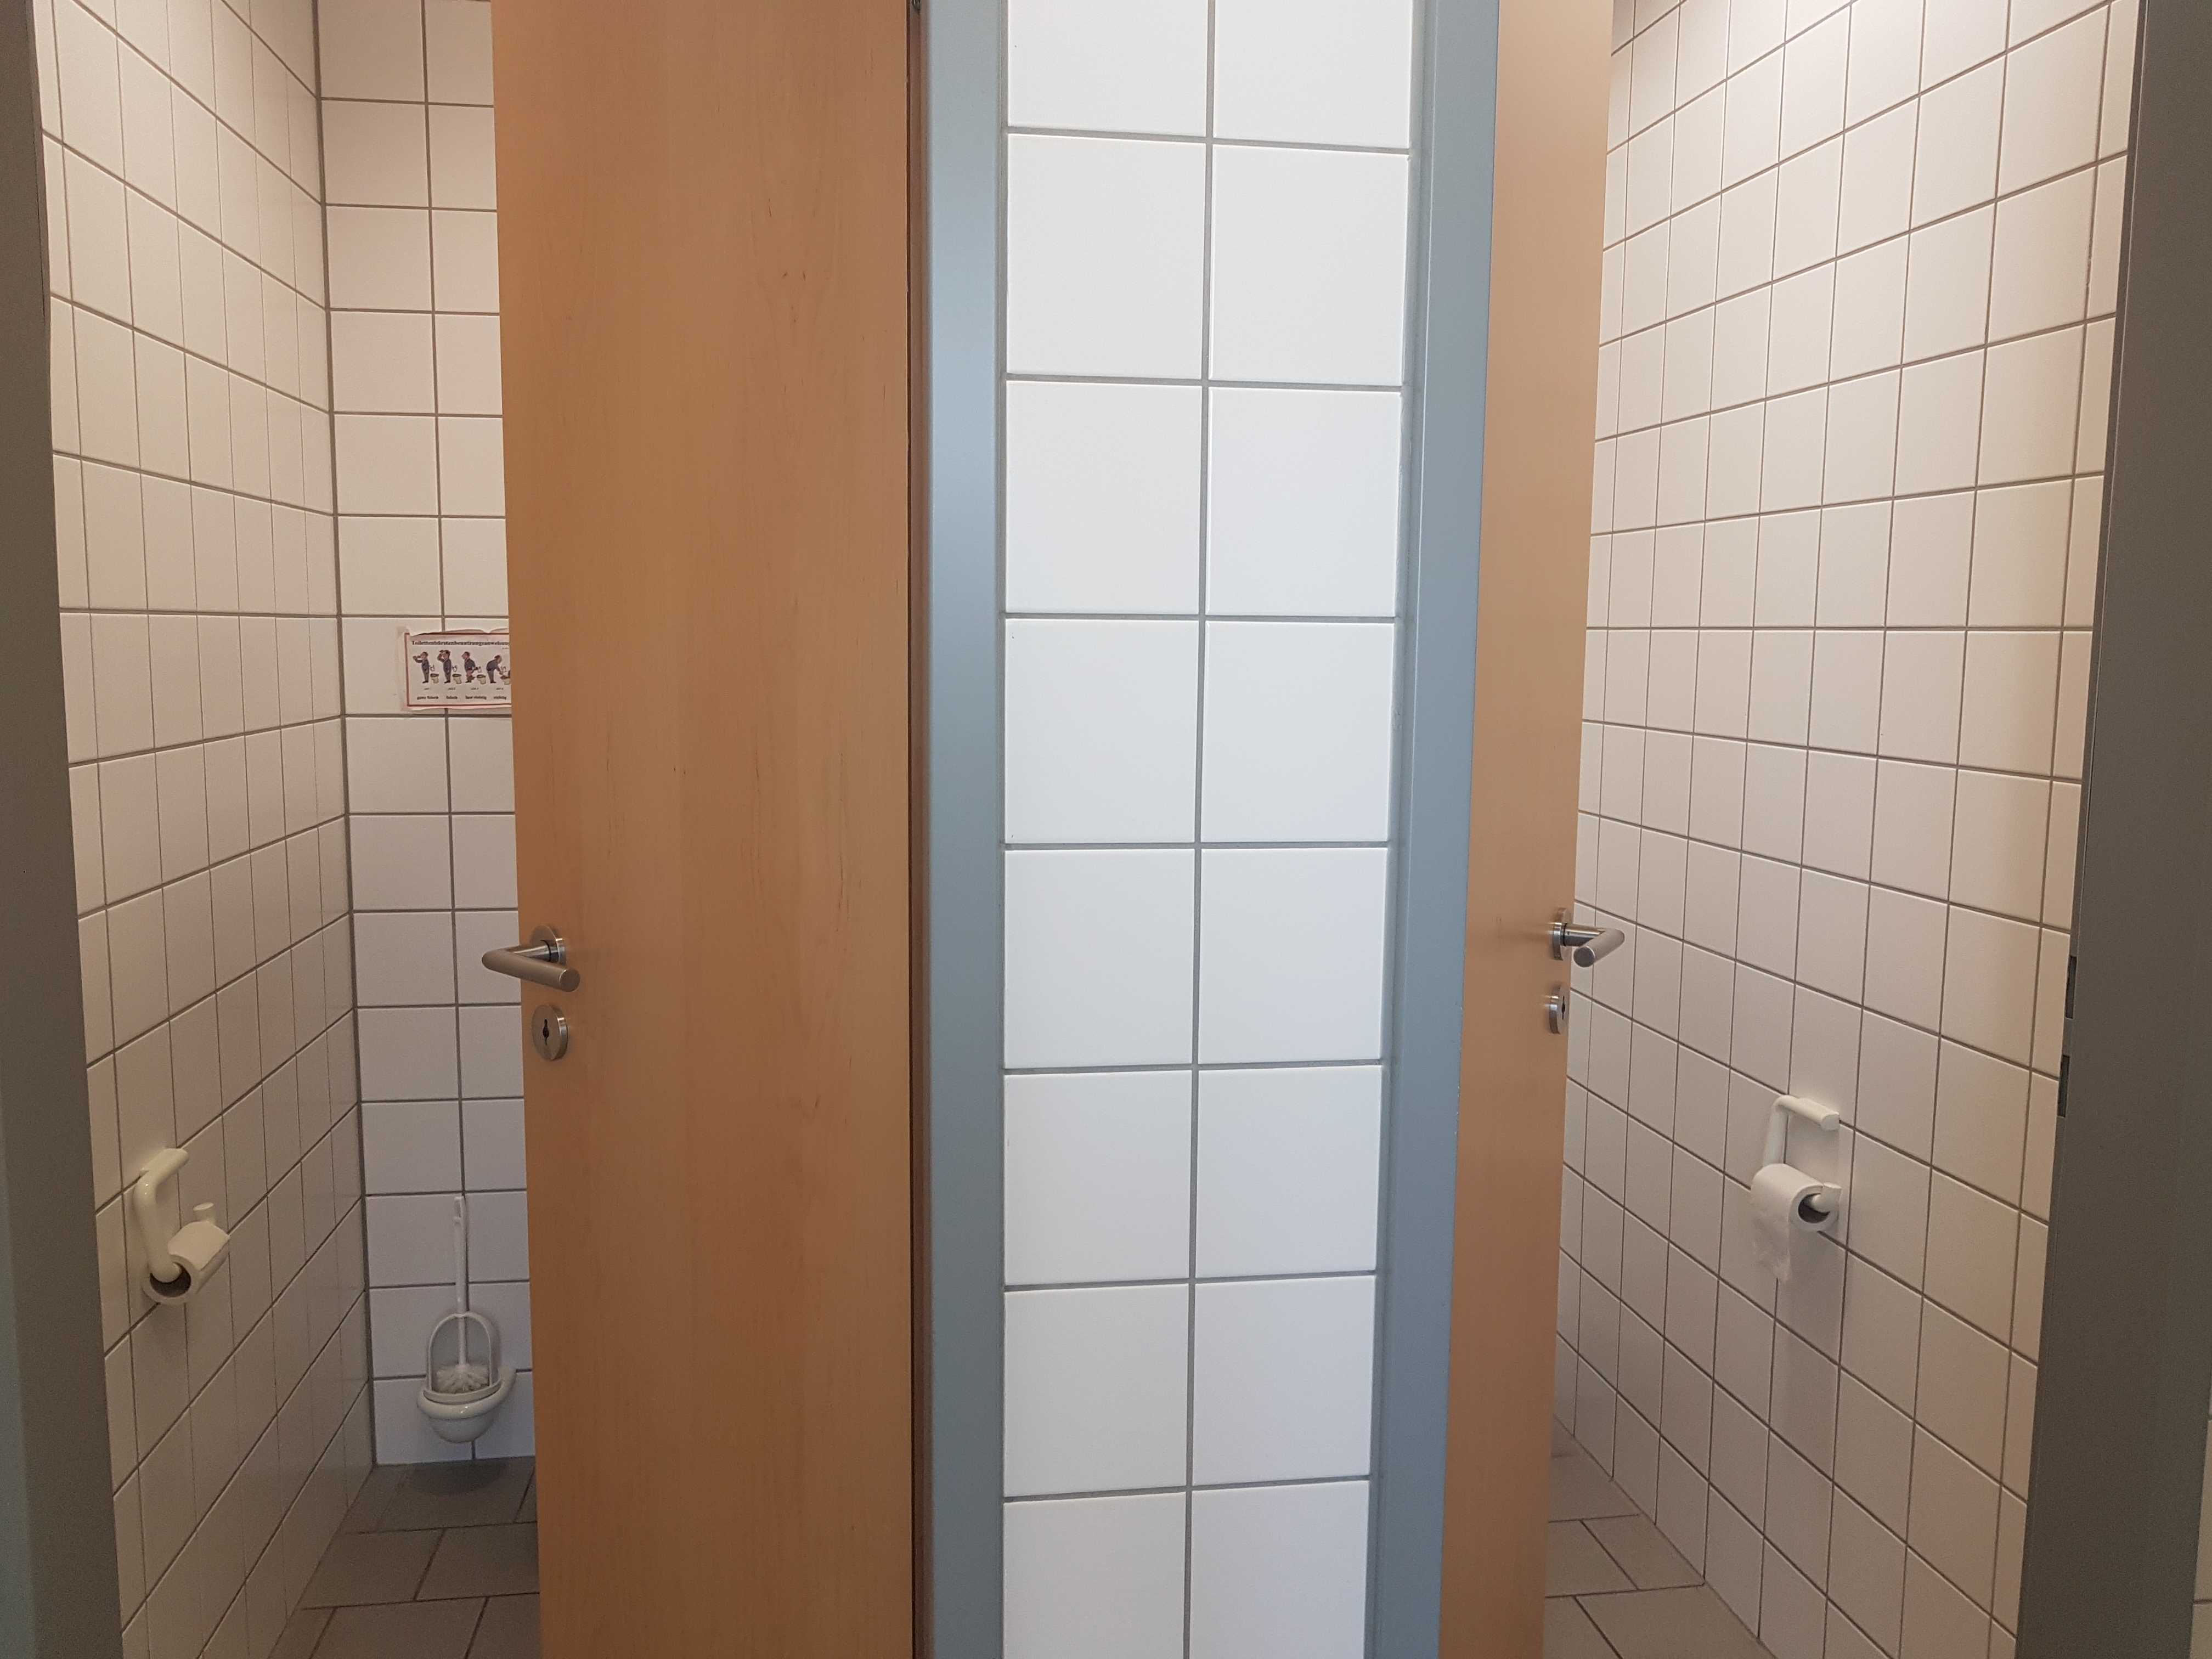 Blick auf zwei geöffnete Toilettentüren